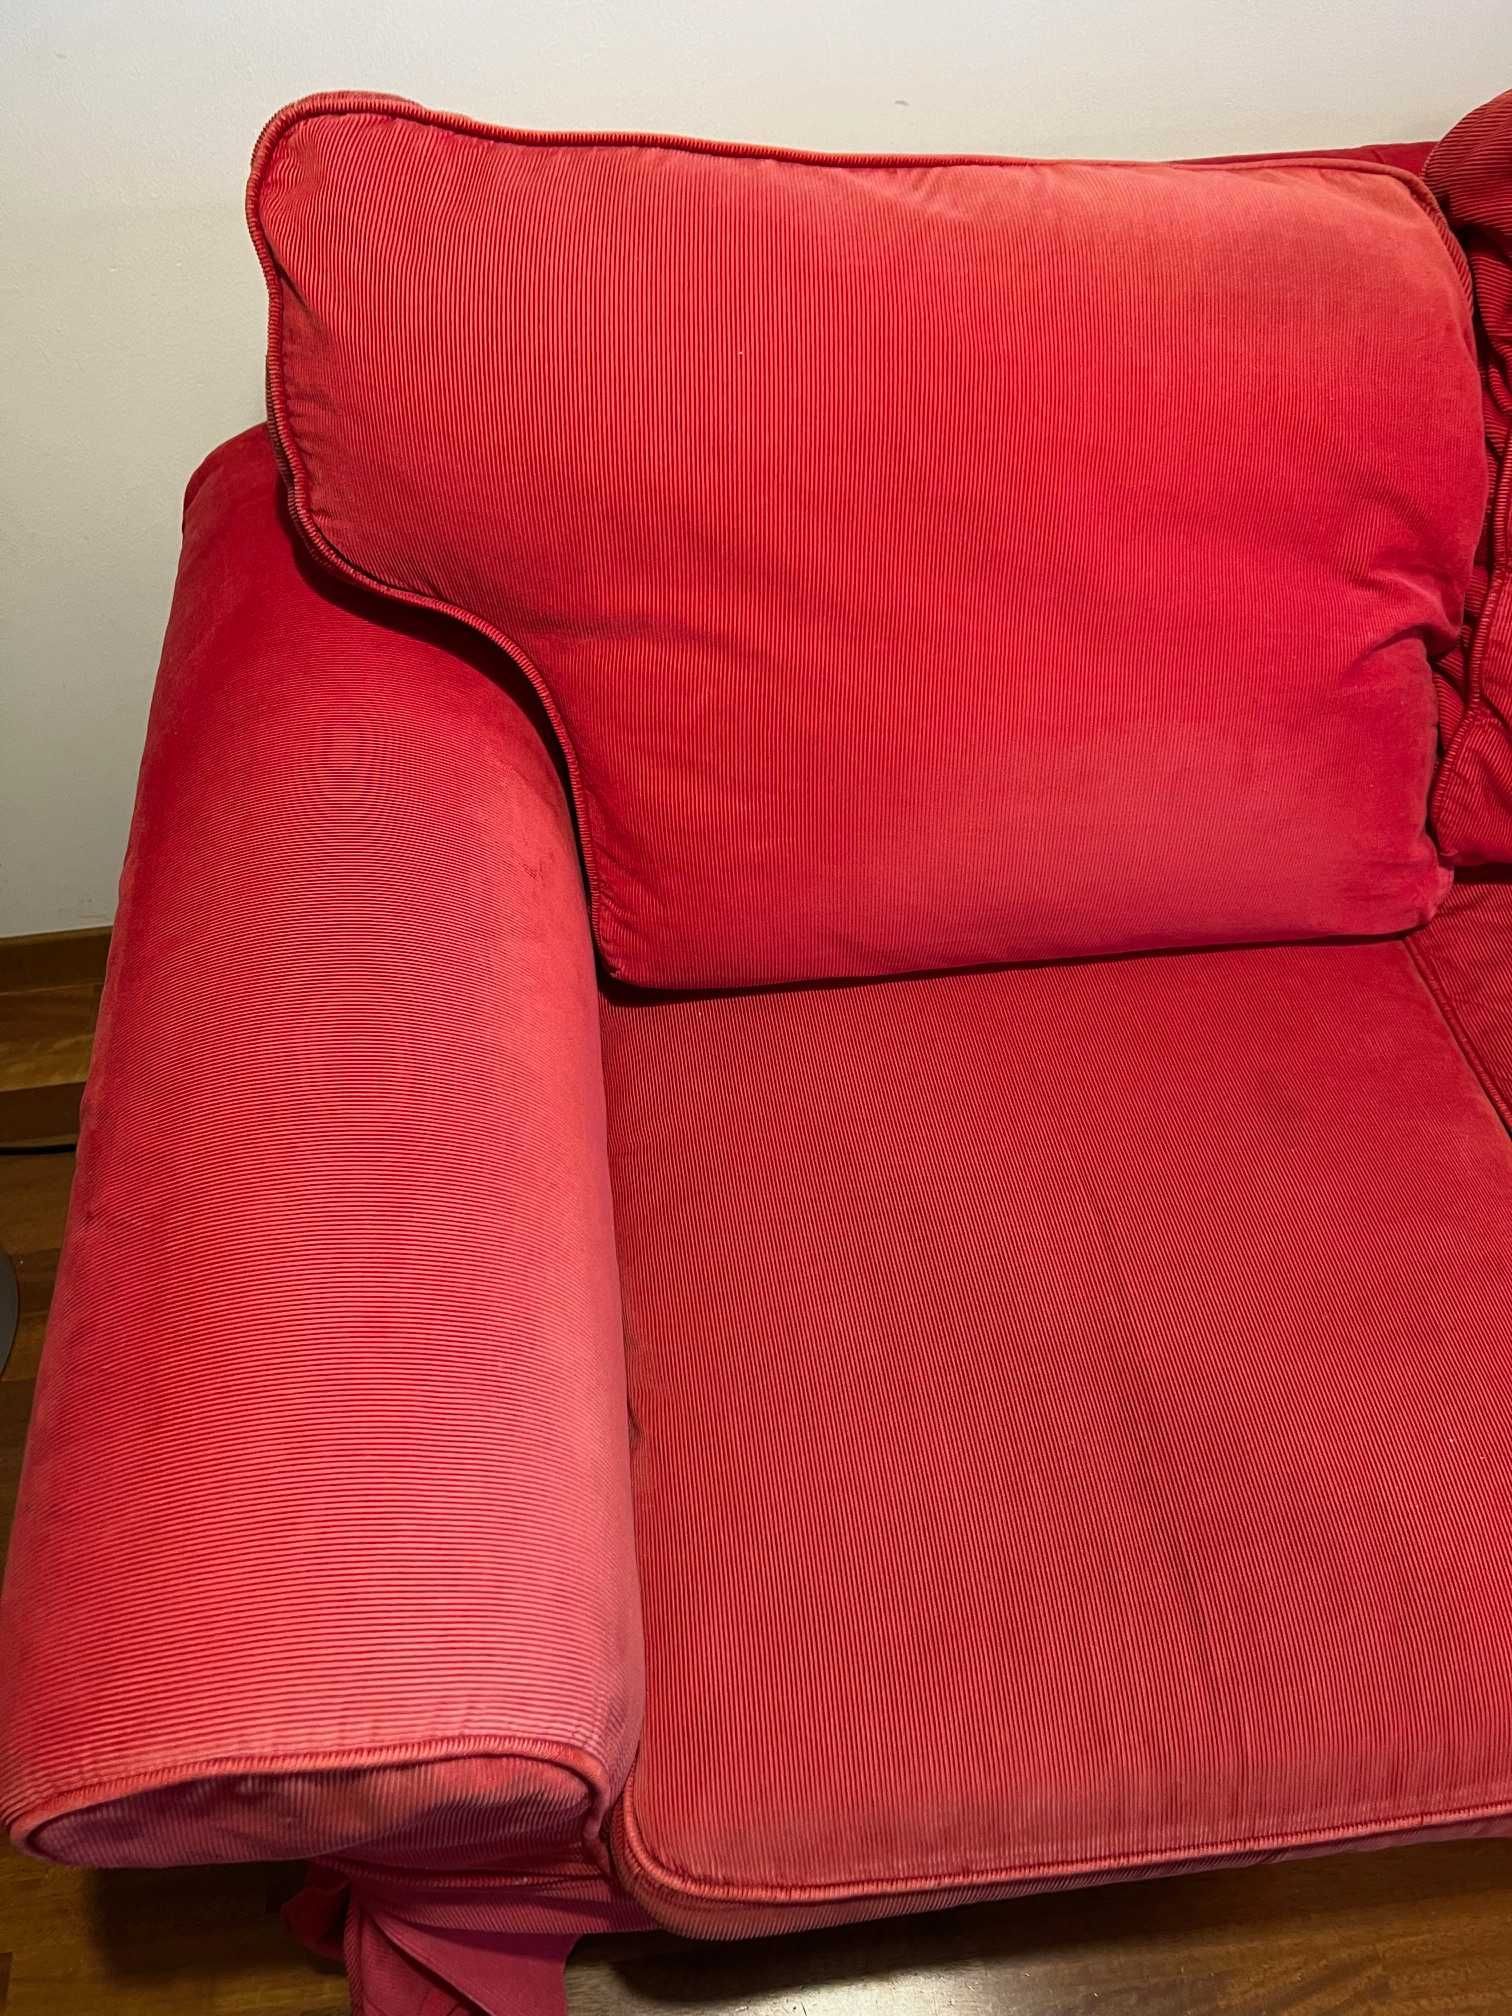 Sofa Ektorp   Ikea 3 osobowa kanapa nierozkładana czerwona sztruks